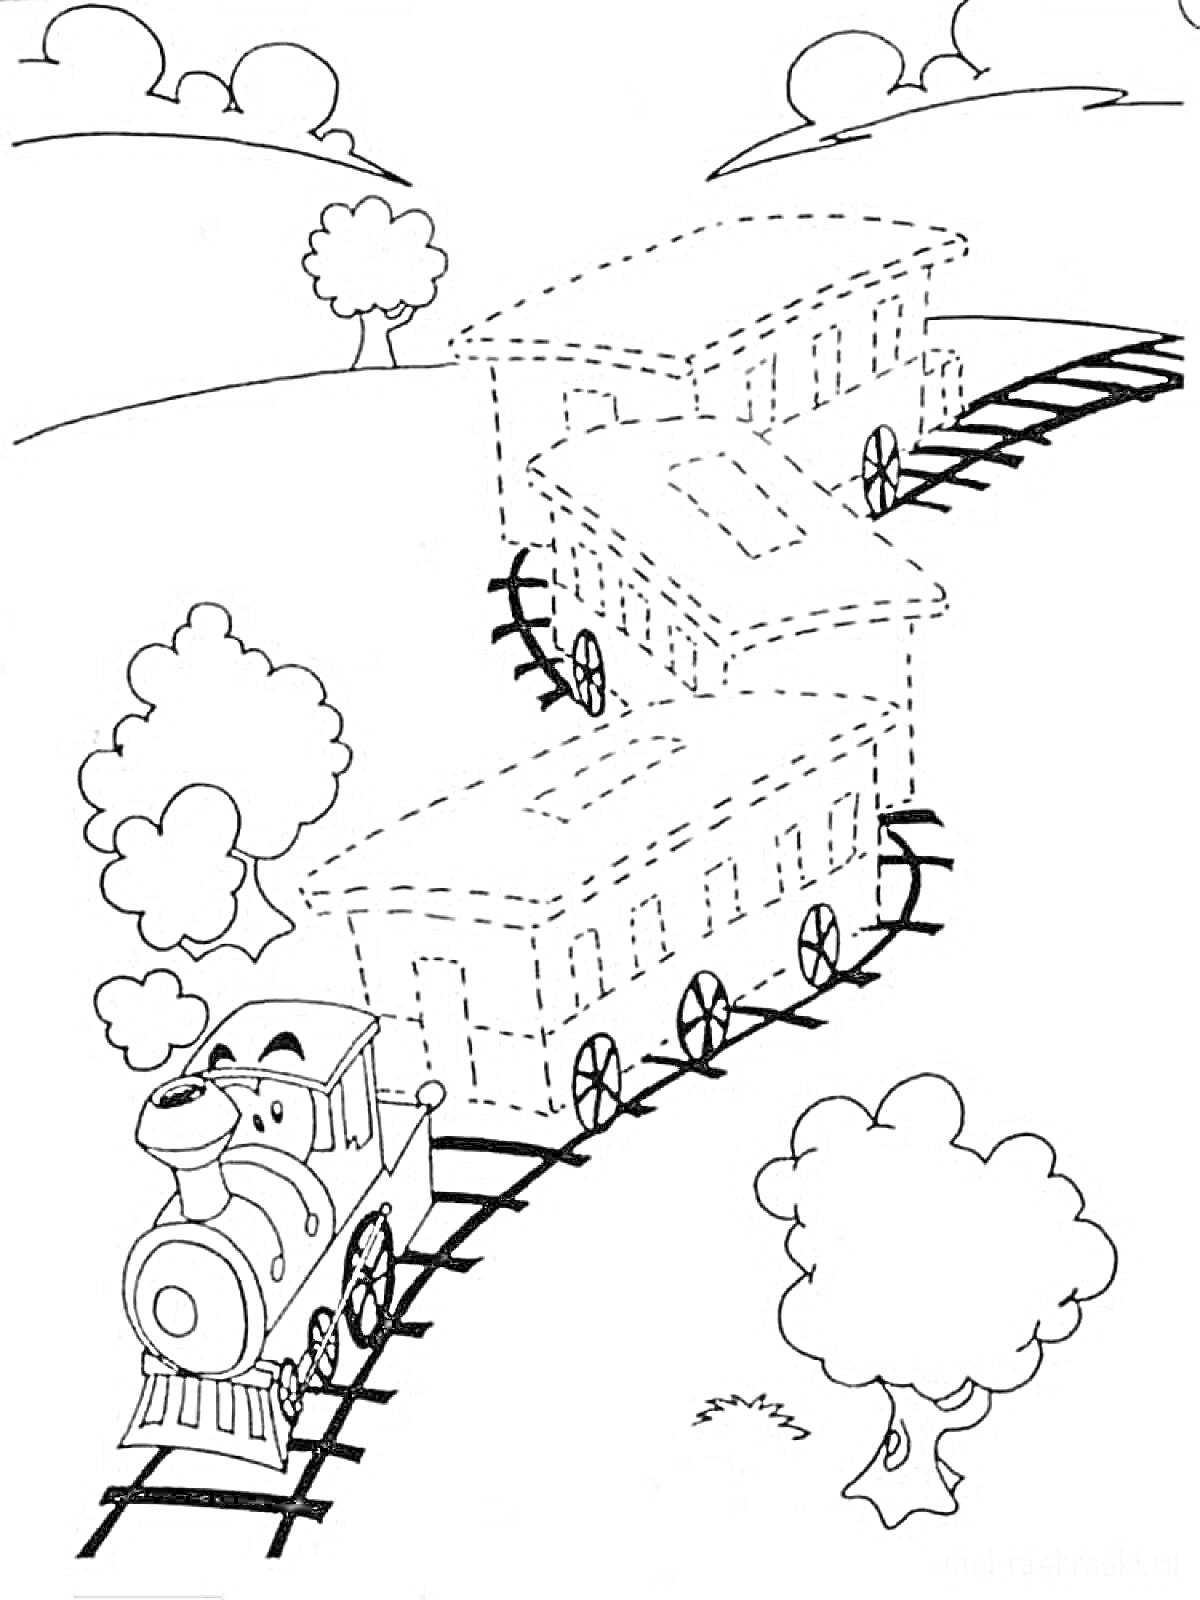 Раскраска Паровозик на железной дороге среди деревьев на природе, дорисовка вагонов по точкам